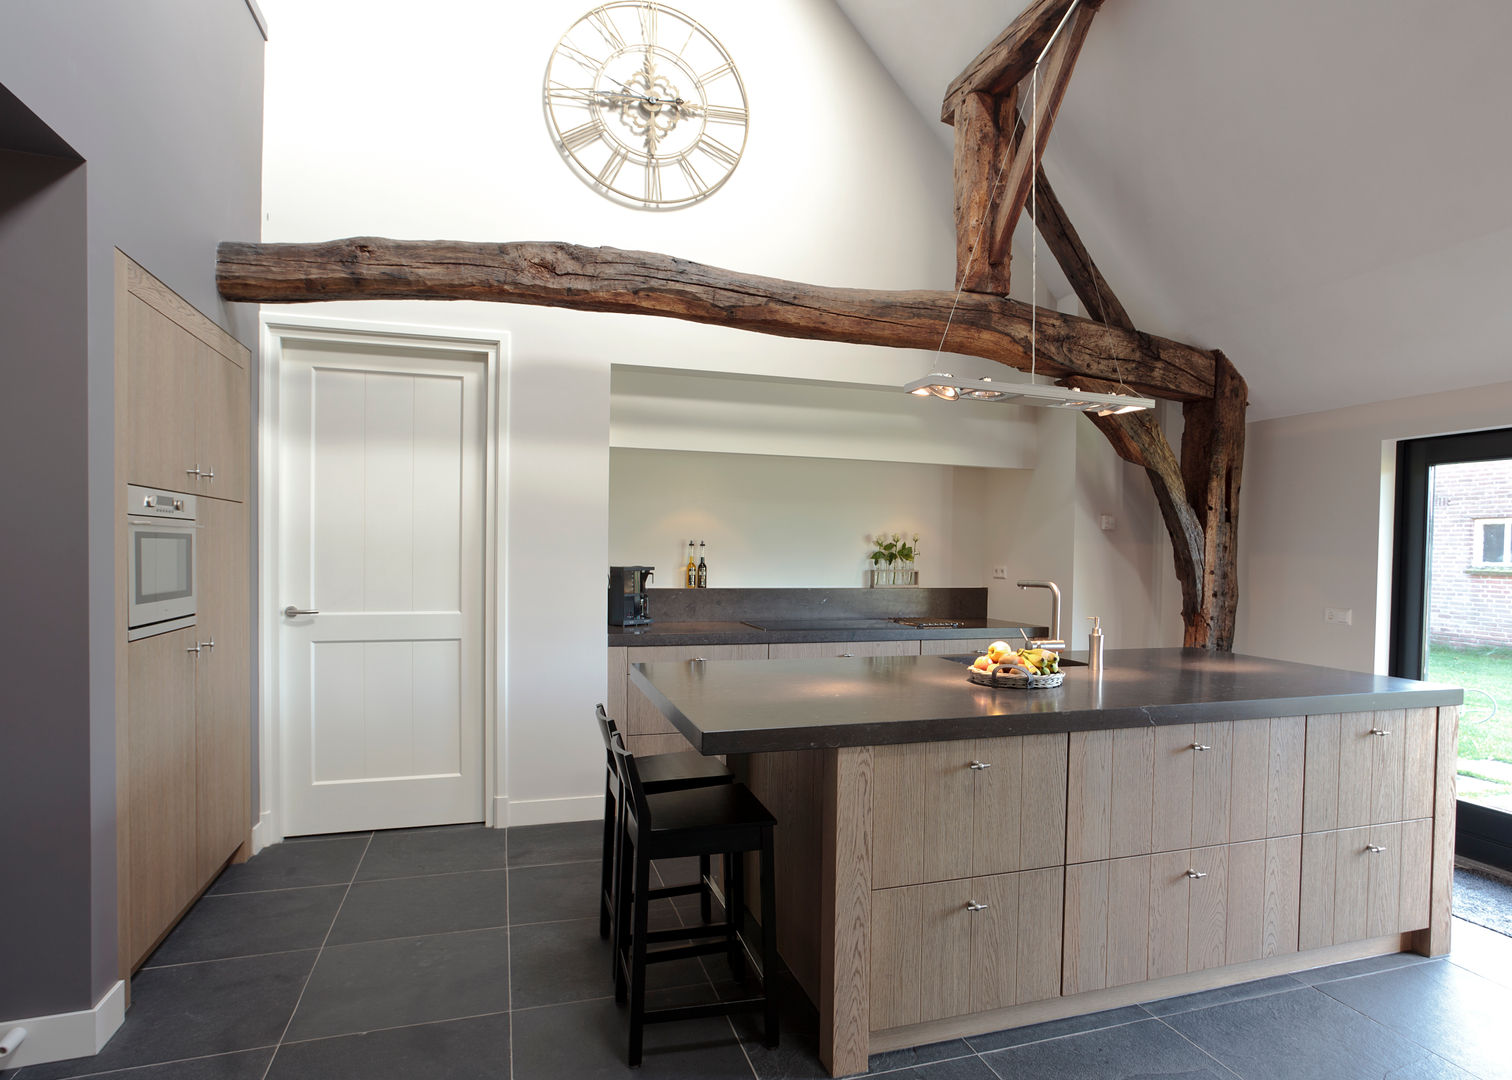 Open keuken, ruimte, licht - een keukeneiland biedt alle mogelijkhede, Thijs van de Wouw keuken- en interieurbouw Thijs van de Wouw keuken- en interieurbouw クラシックデザインの キッチン